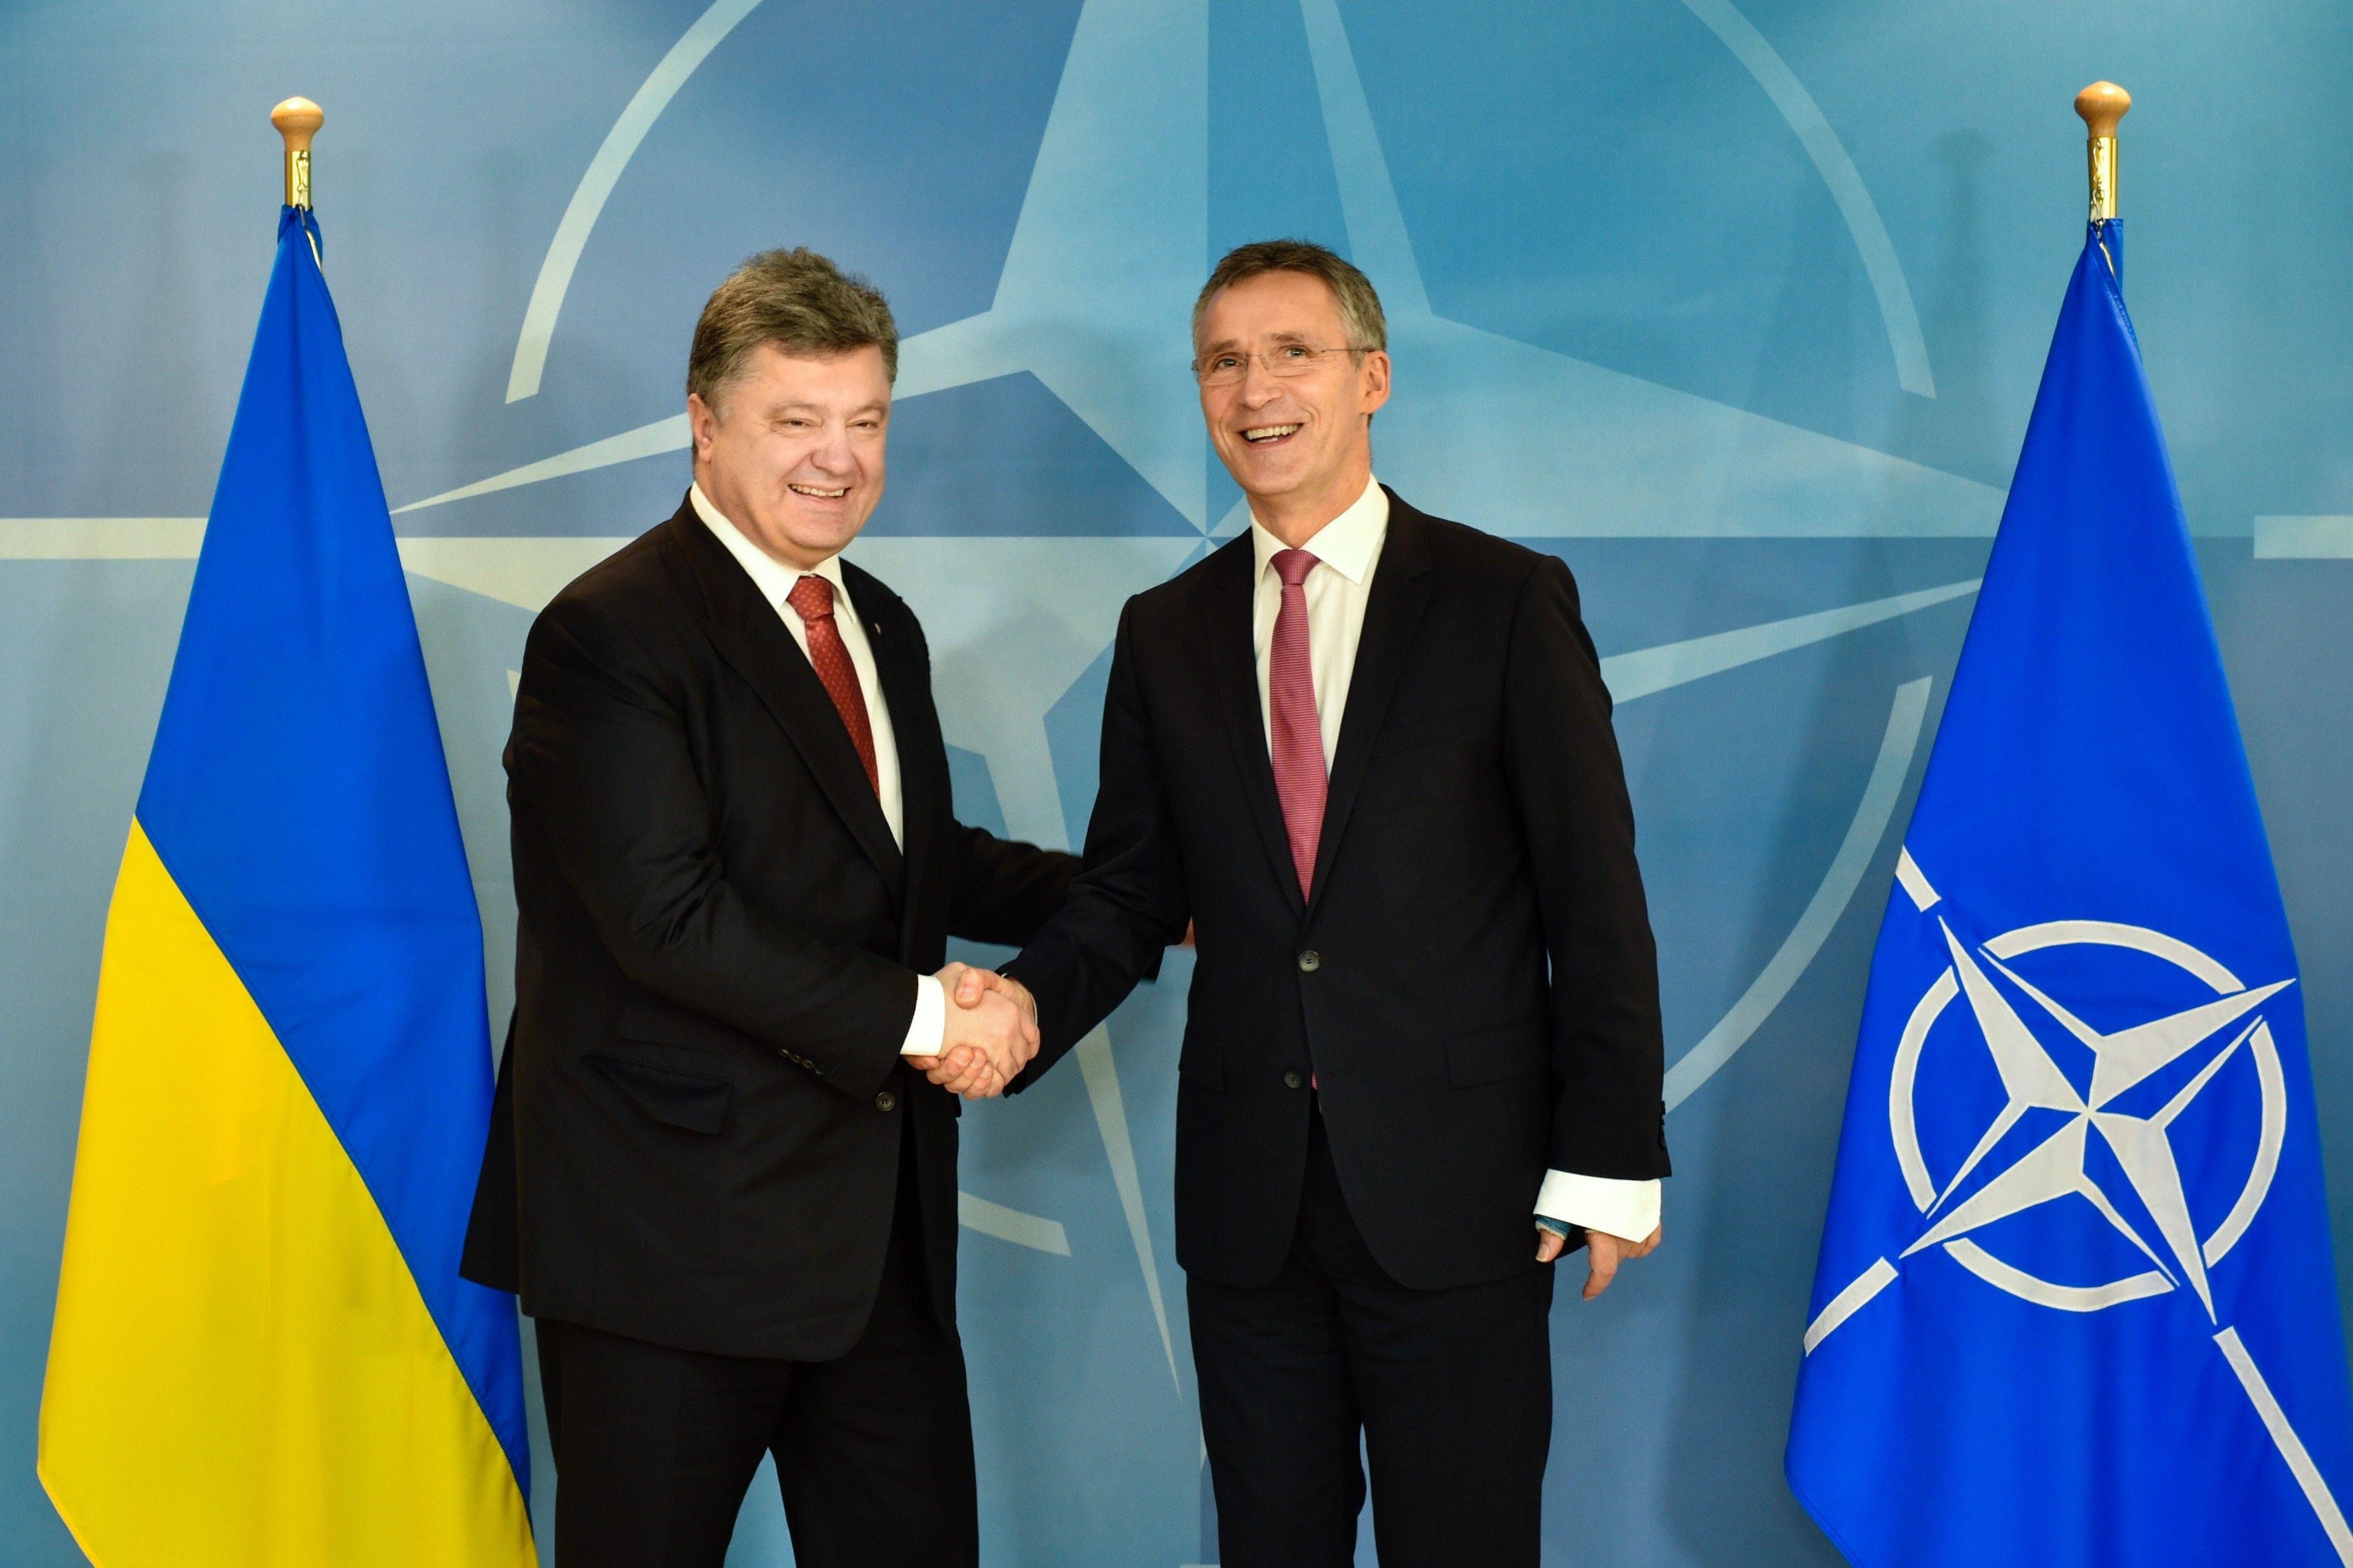 Верховная Рада приняла законопроект о вступлении Украины в НАТО